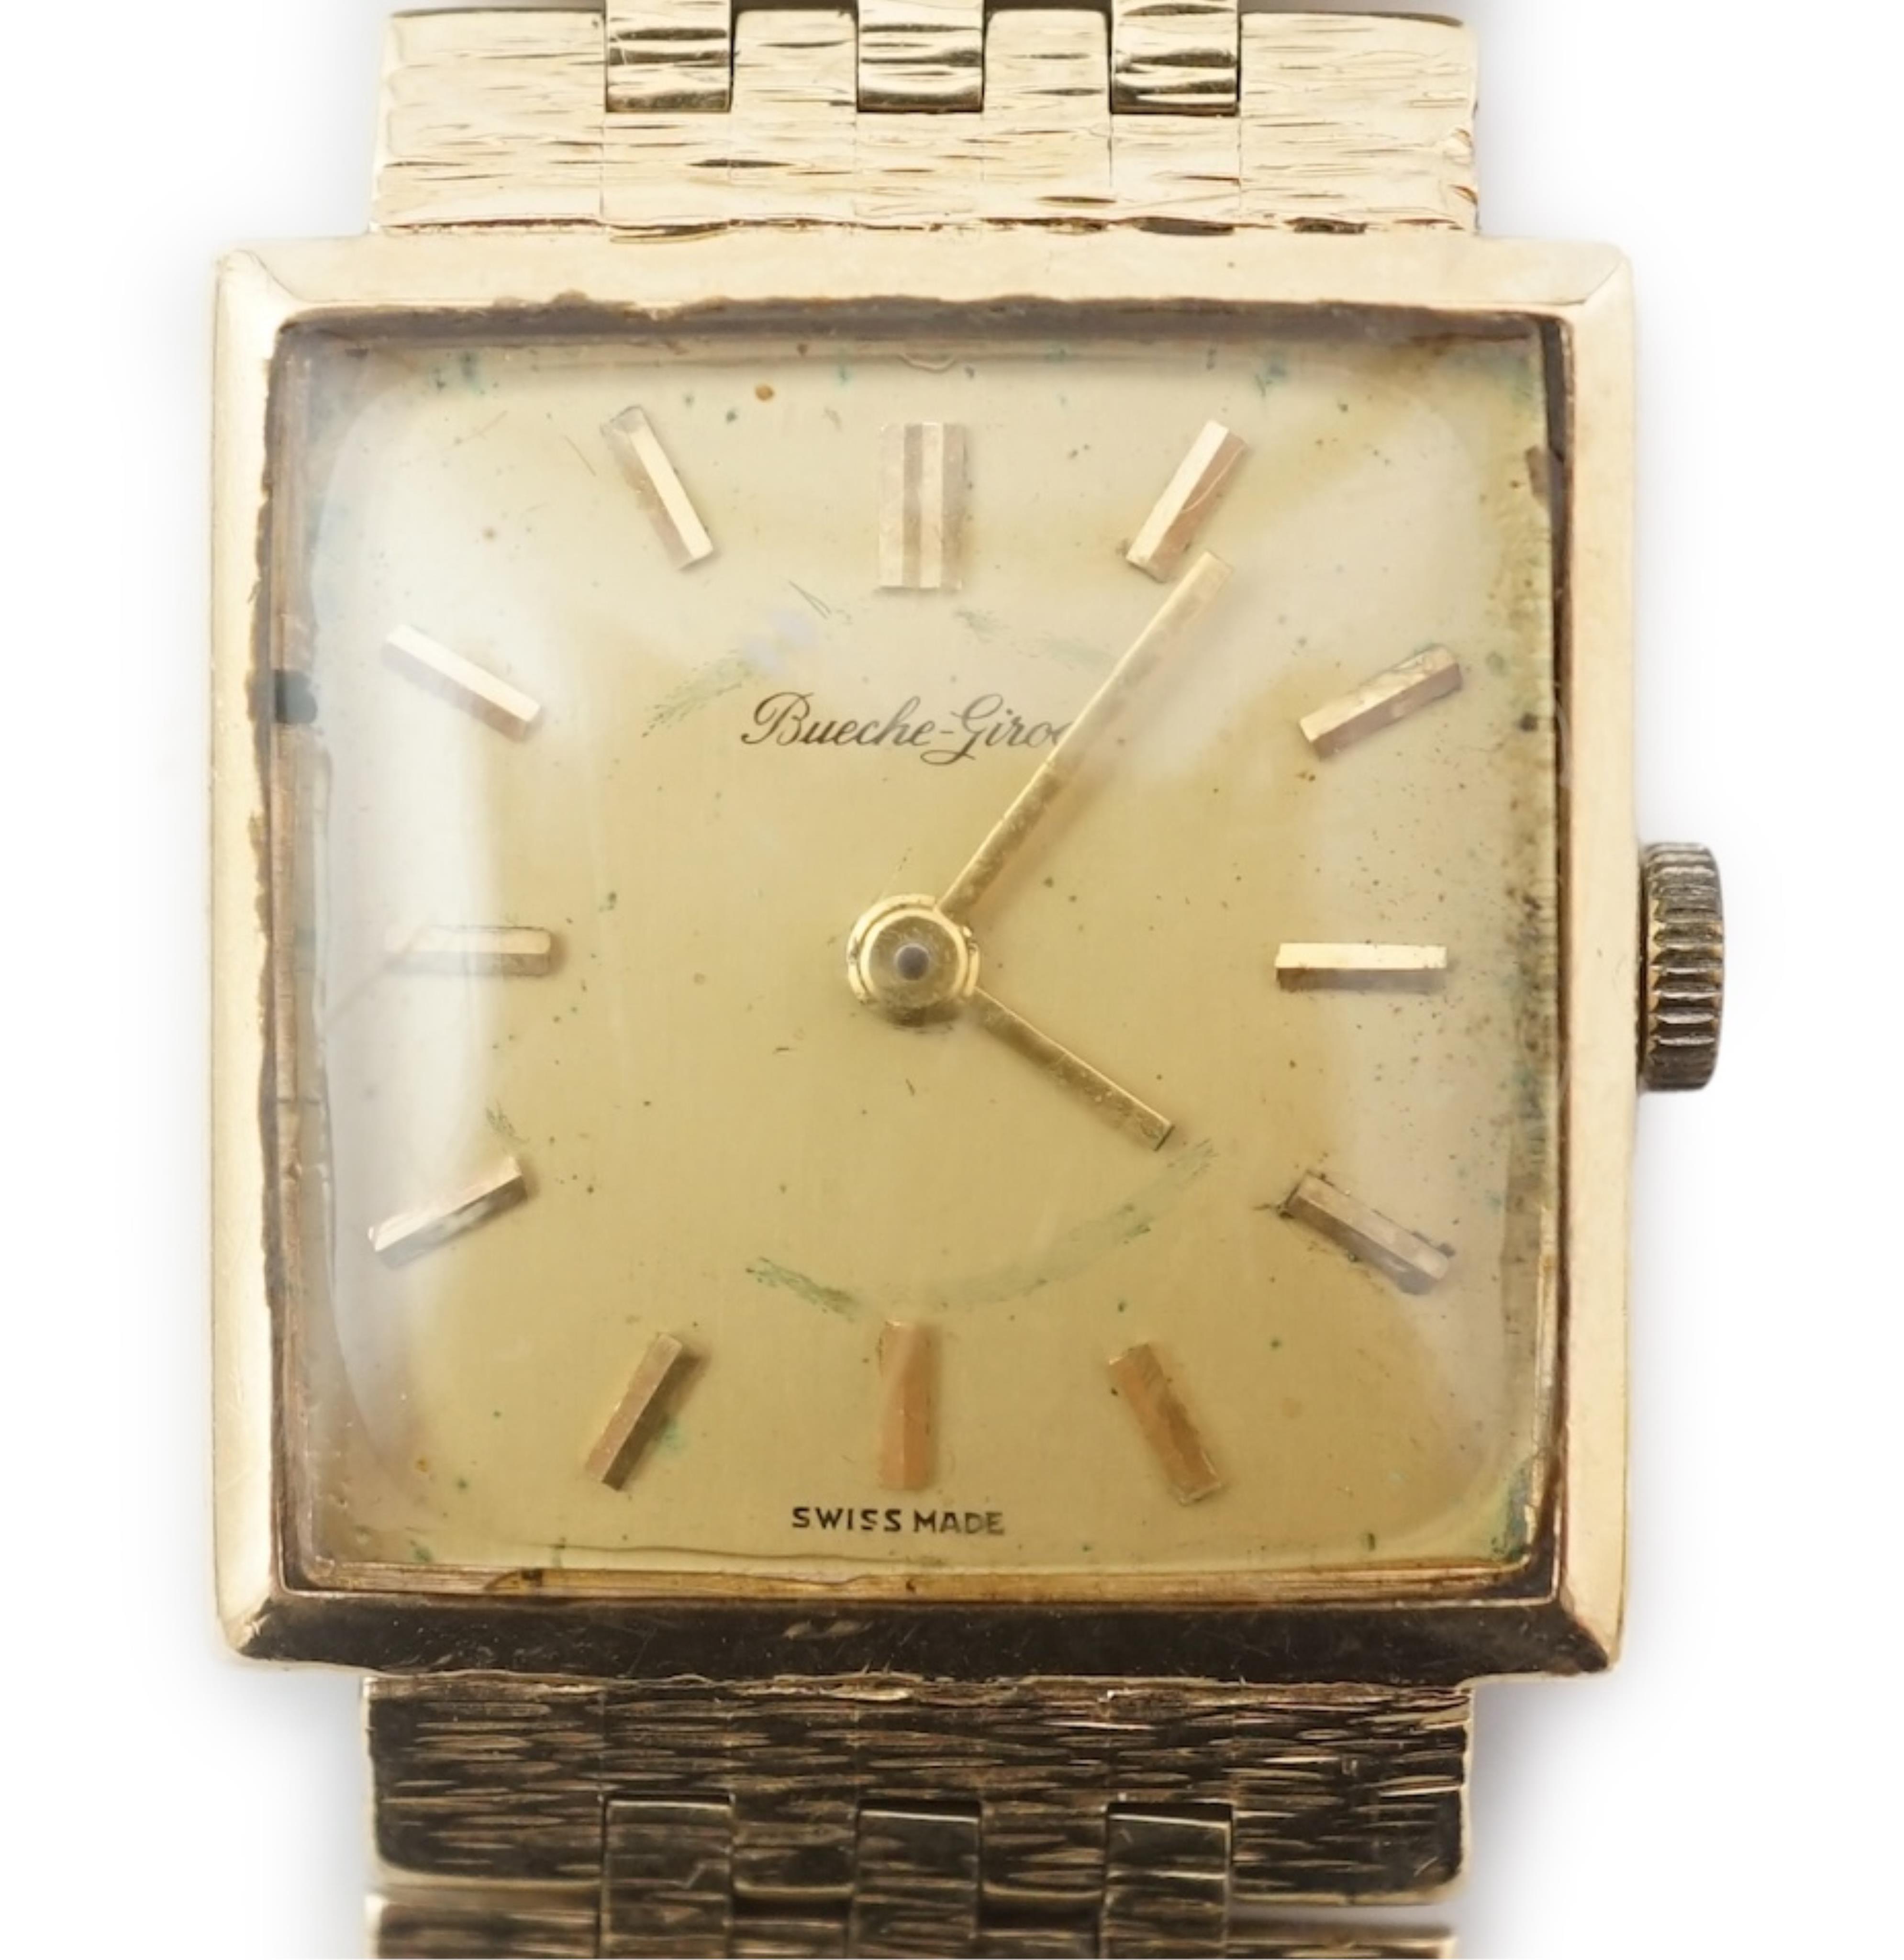 A gentleman's 1970's 9ct gold Bueche Girod manual wind dress wrist watch, on an integral 9ct gold bracelet